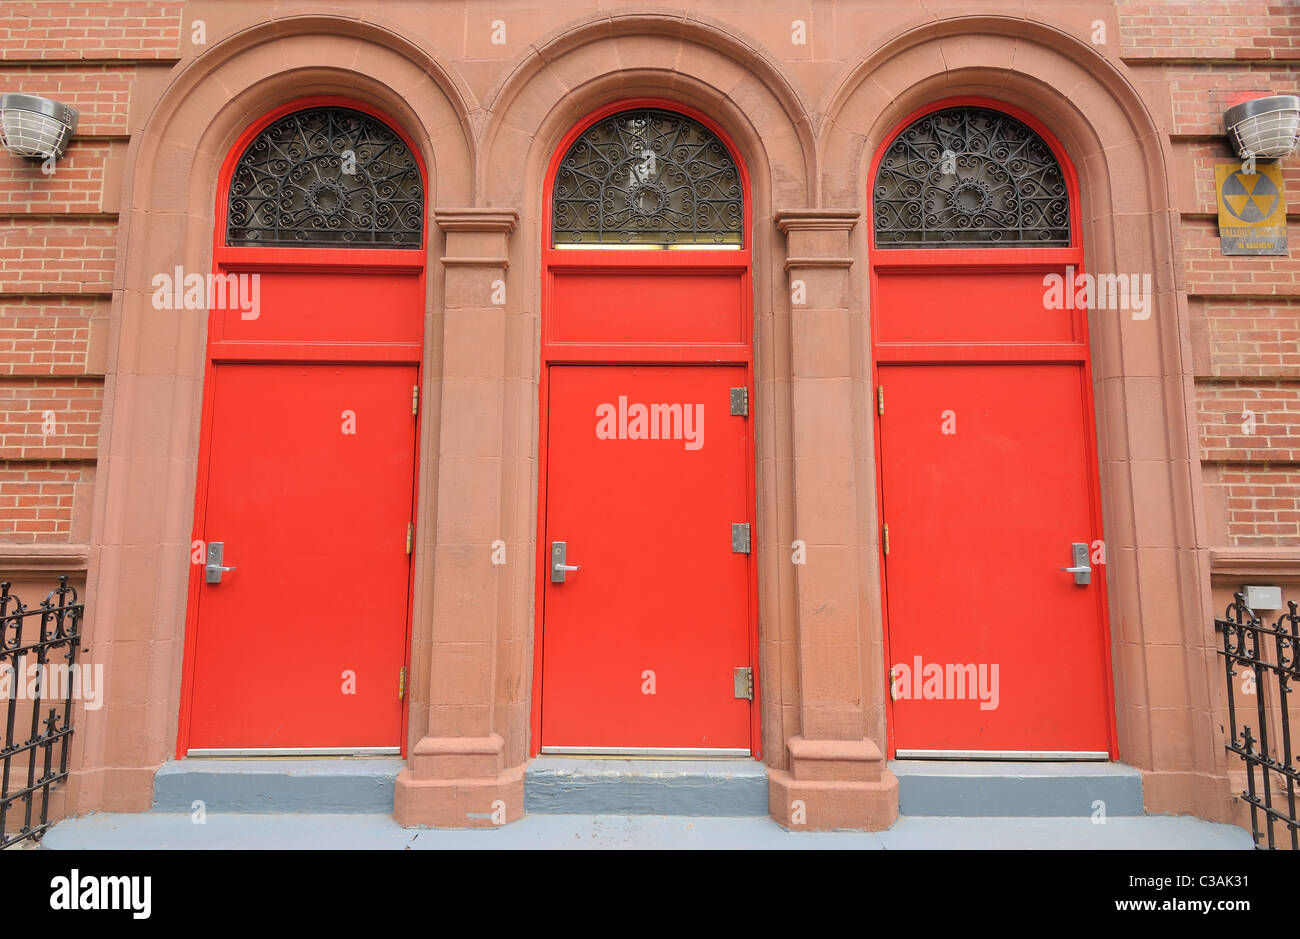 Trois portes rouges à l'entrée d'un bâtiment. Banque D'Images